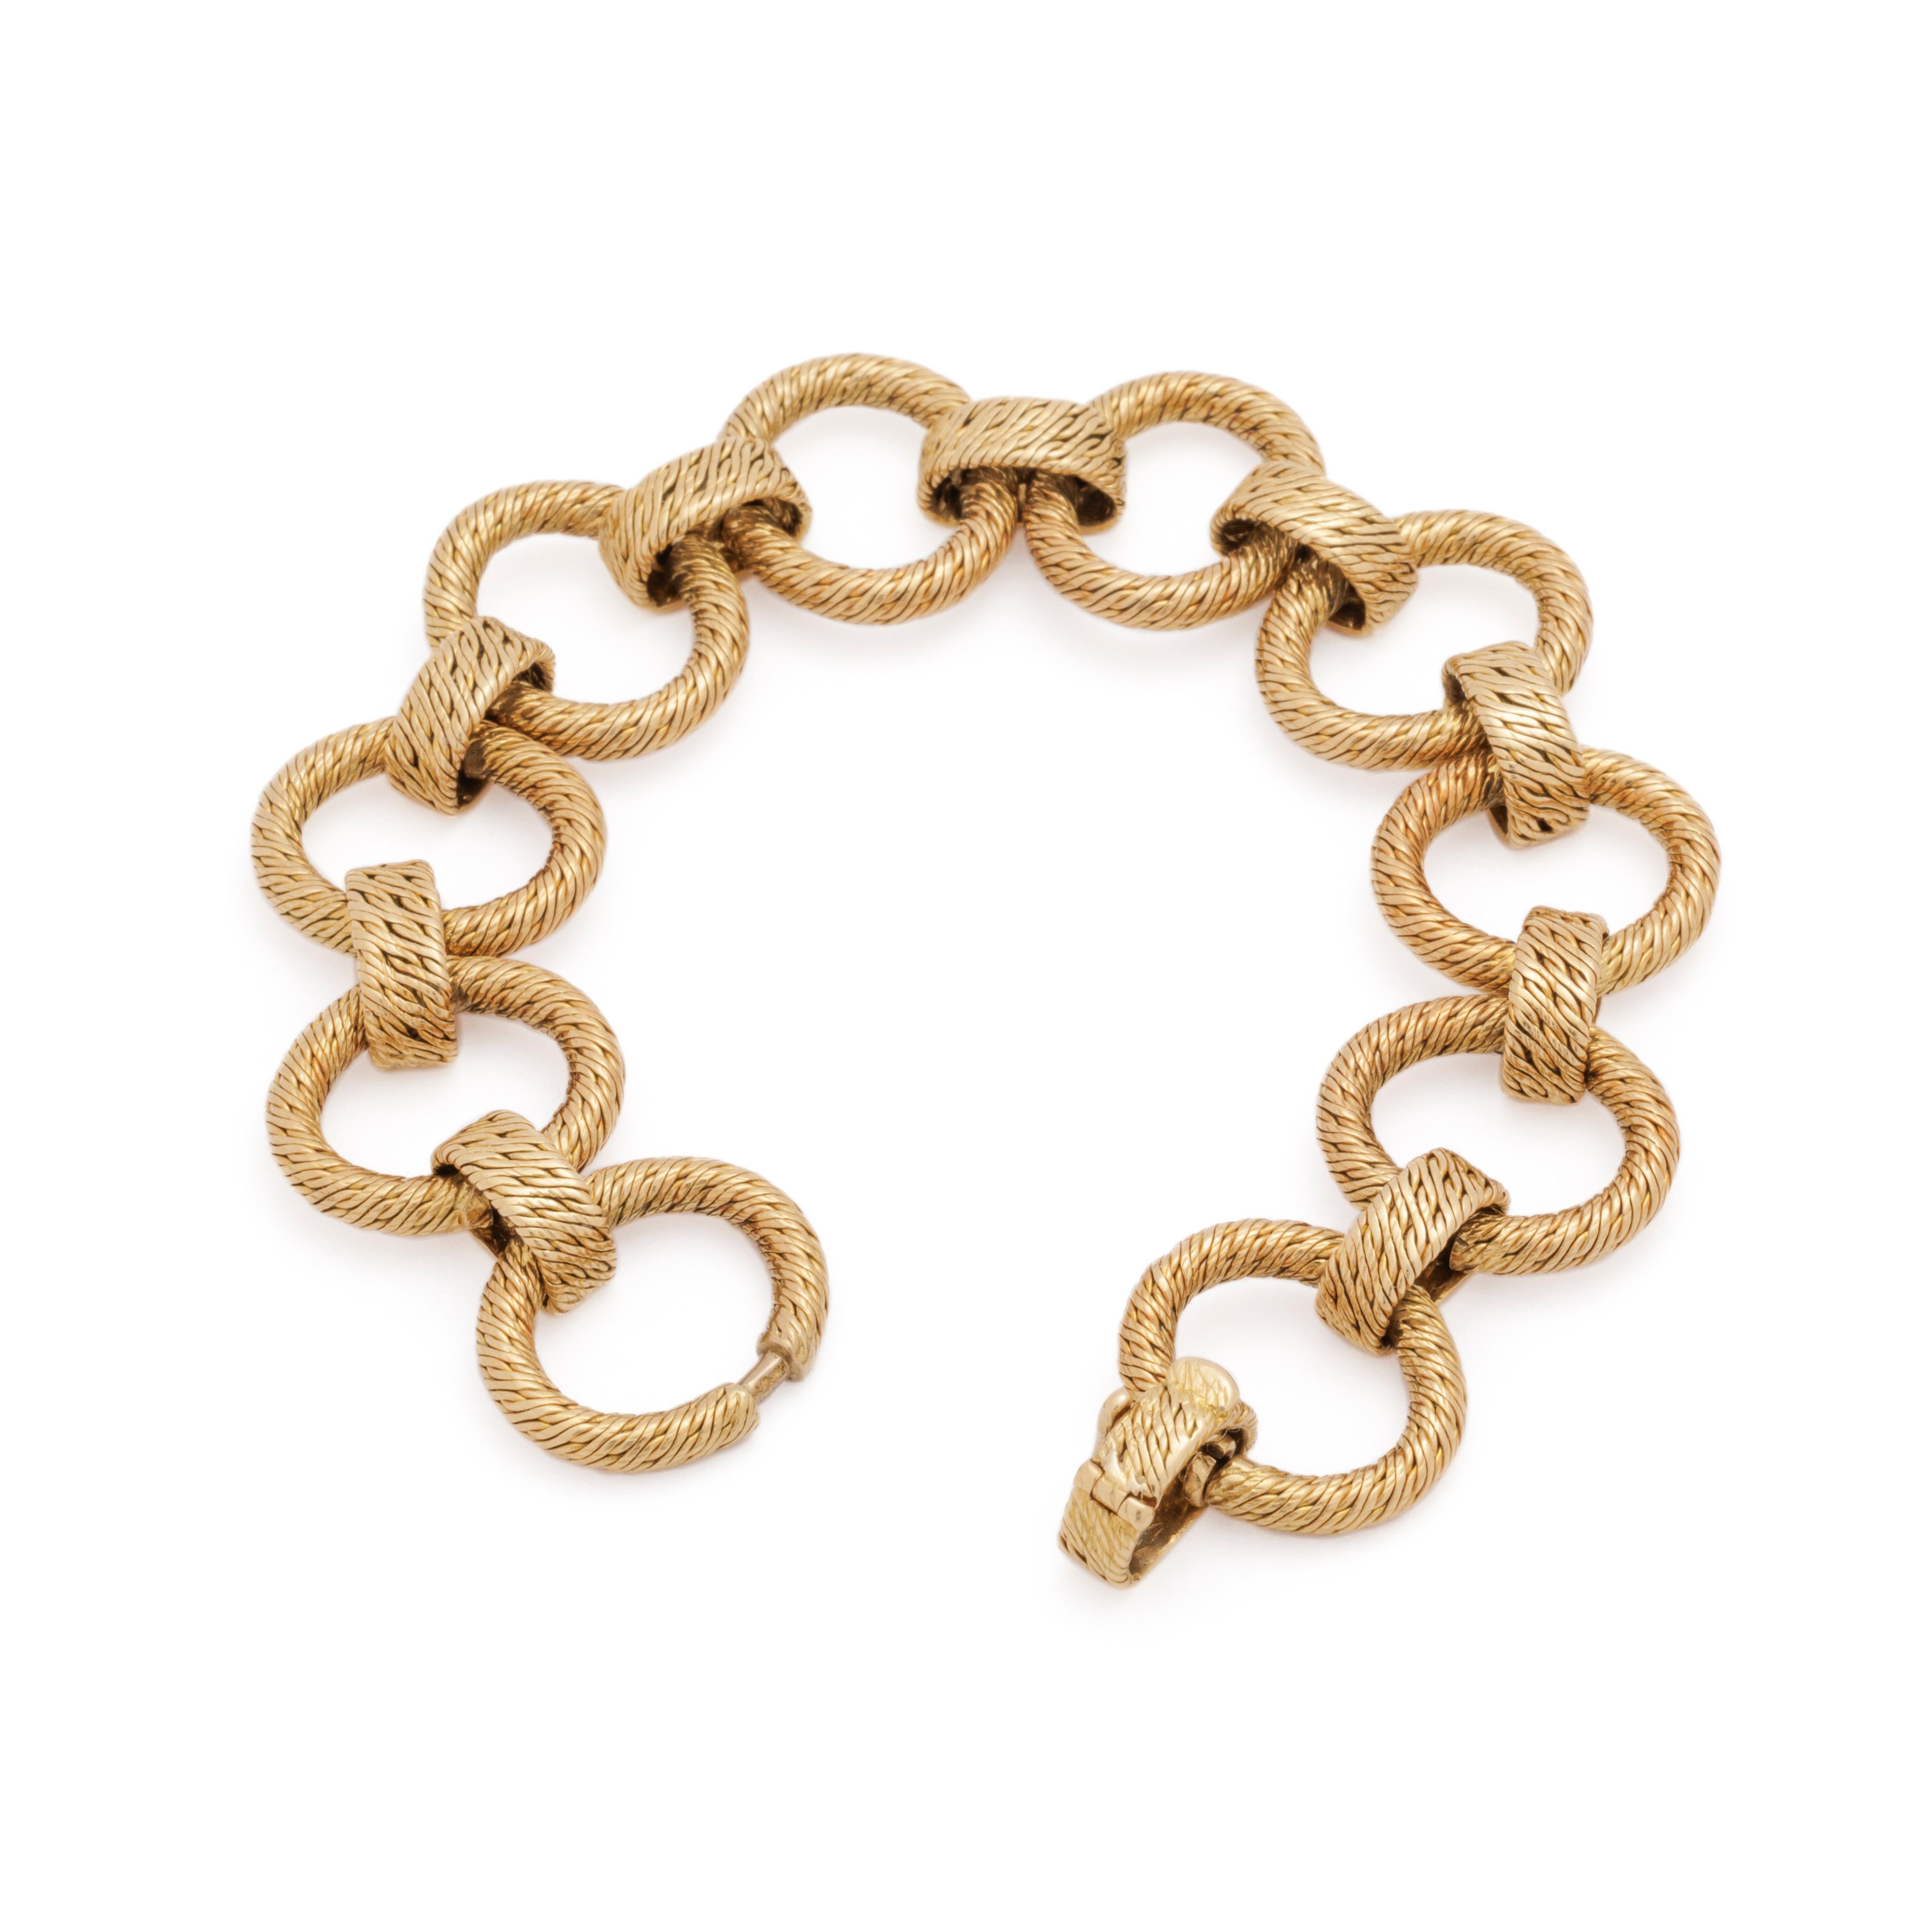 Georges Lenfant 18 Karat Woven Circles Bracelet

55 grams
7.5 inches length
0.90